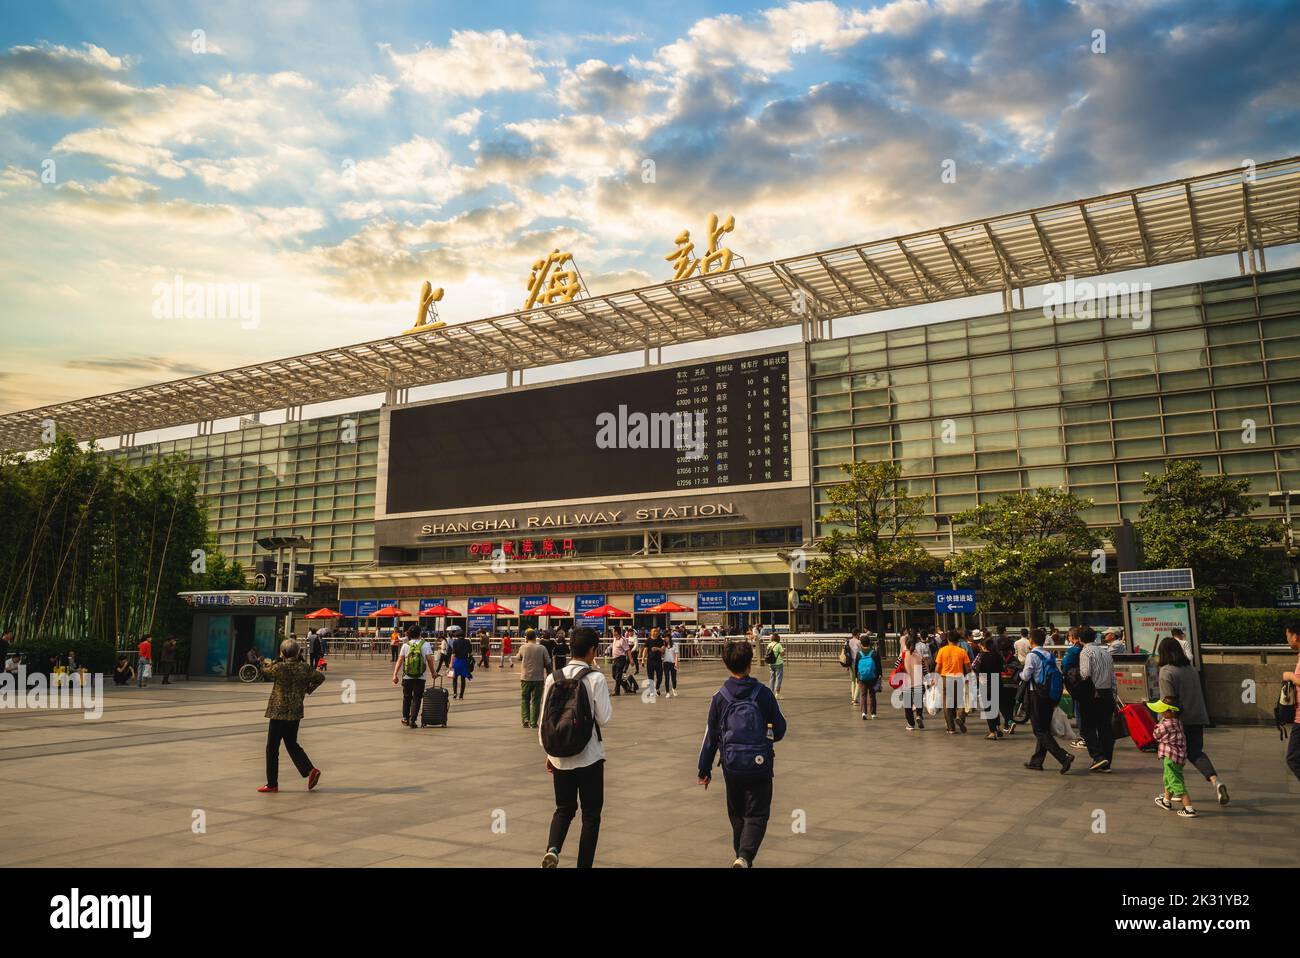 11 de mayo de 2019: La estación de ferrocarril de Shanghai, ubicada en Moling Road, es una de las cuatro estaciones de ferrocarril más importantes de Shanghai, China. Fue inaugurado en 1987 Foto de stock